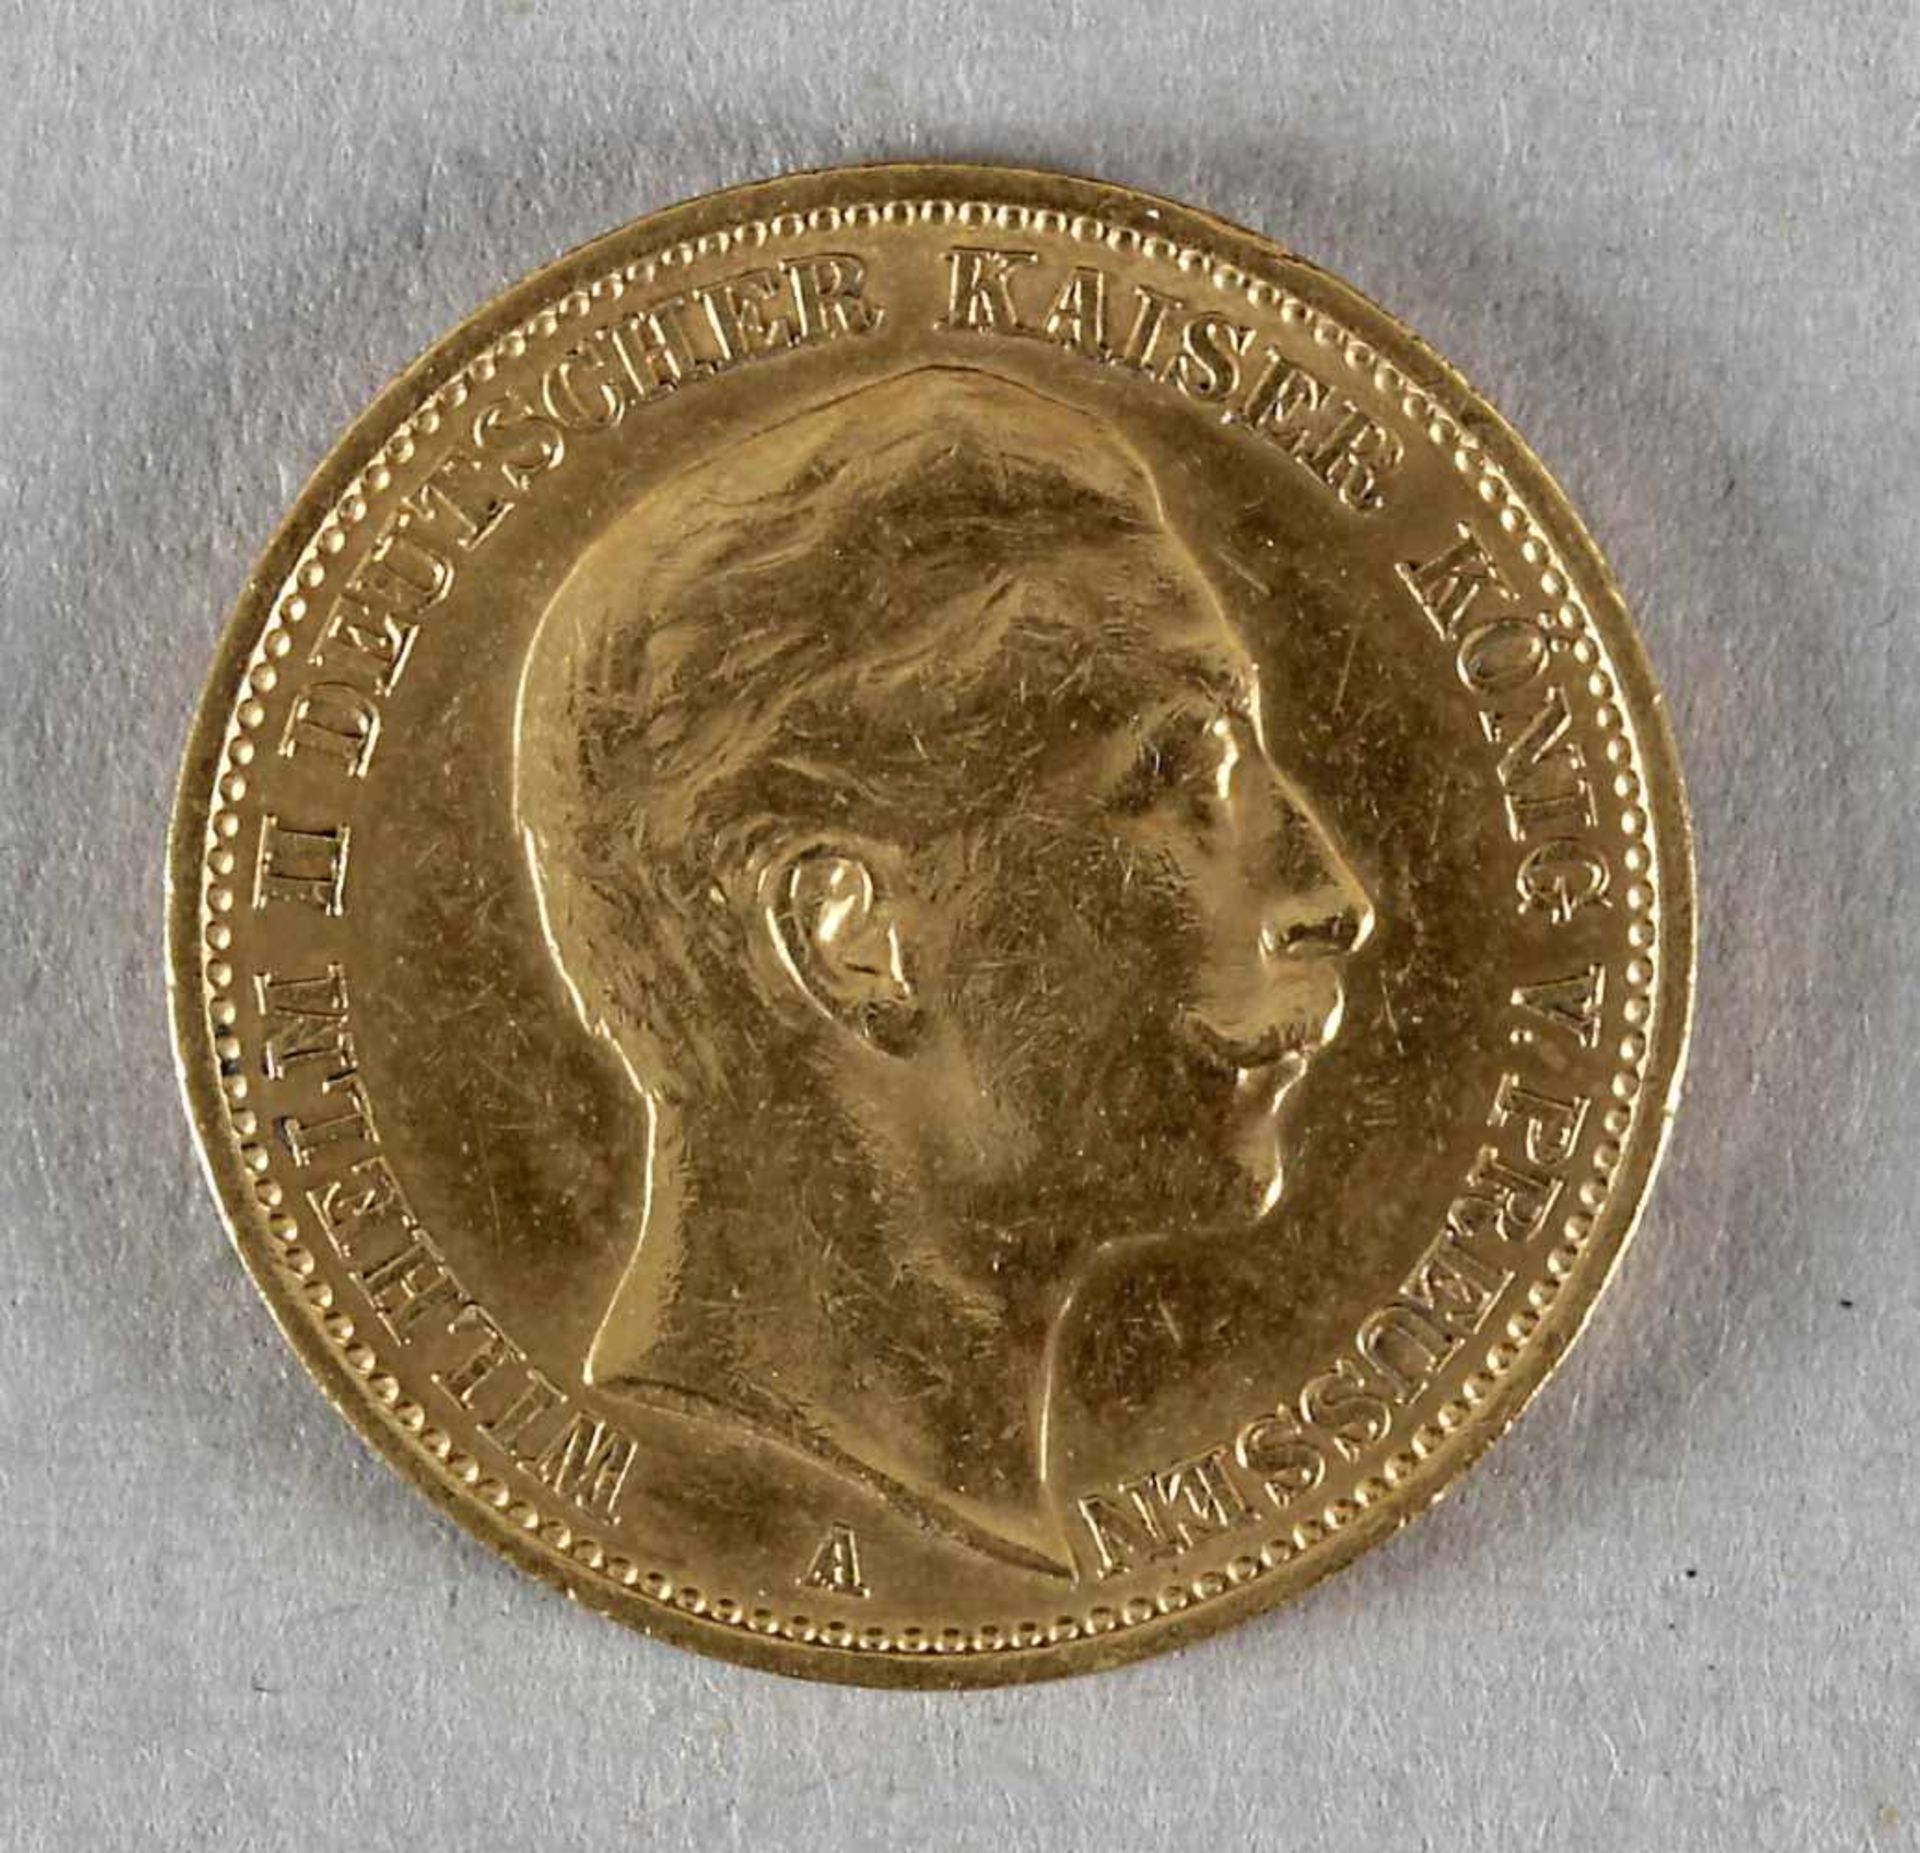 Goldmünze, 20 Mark, Wilhelm II. von Preußen, 1909 A